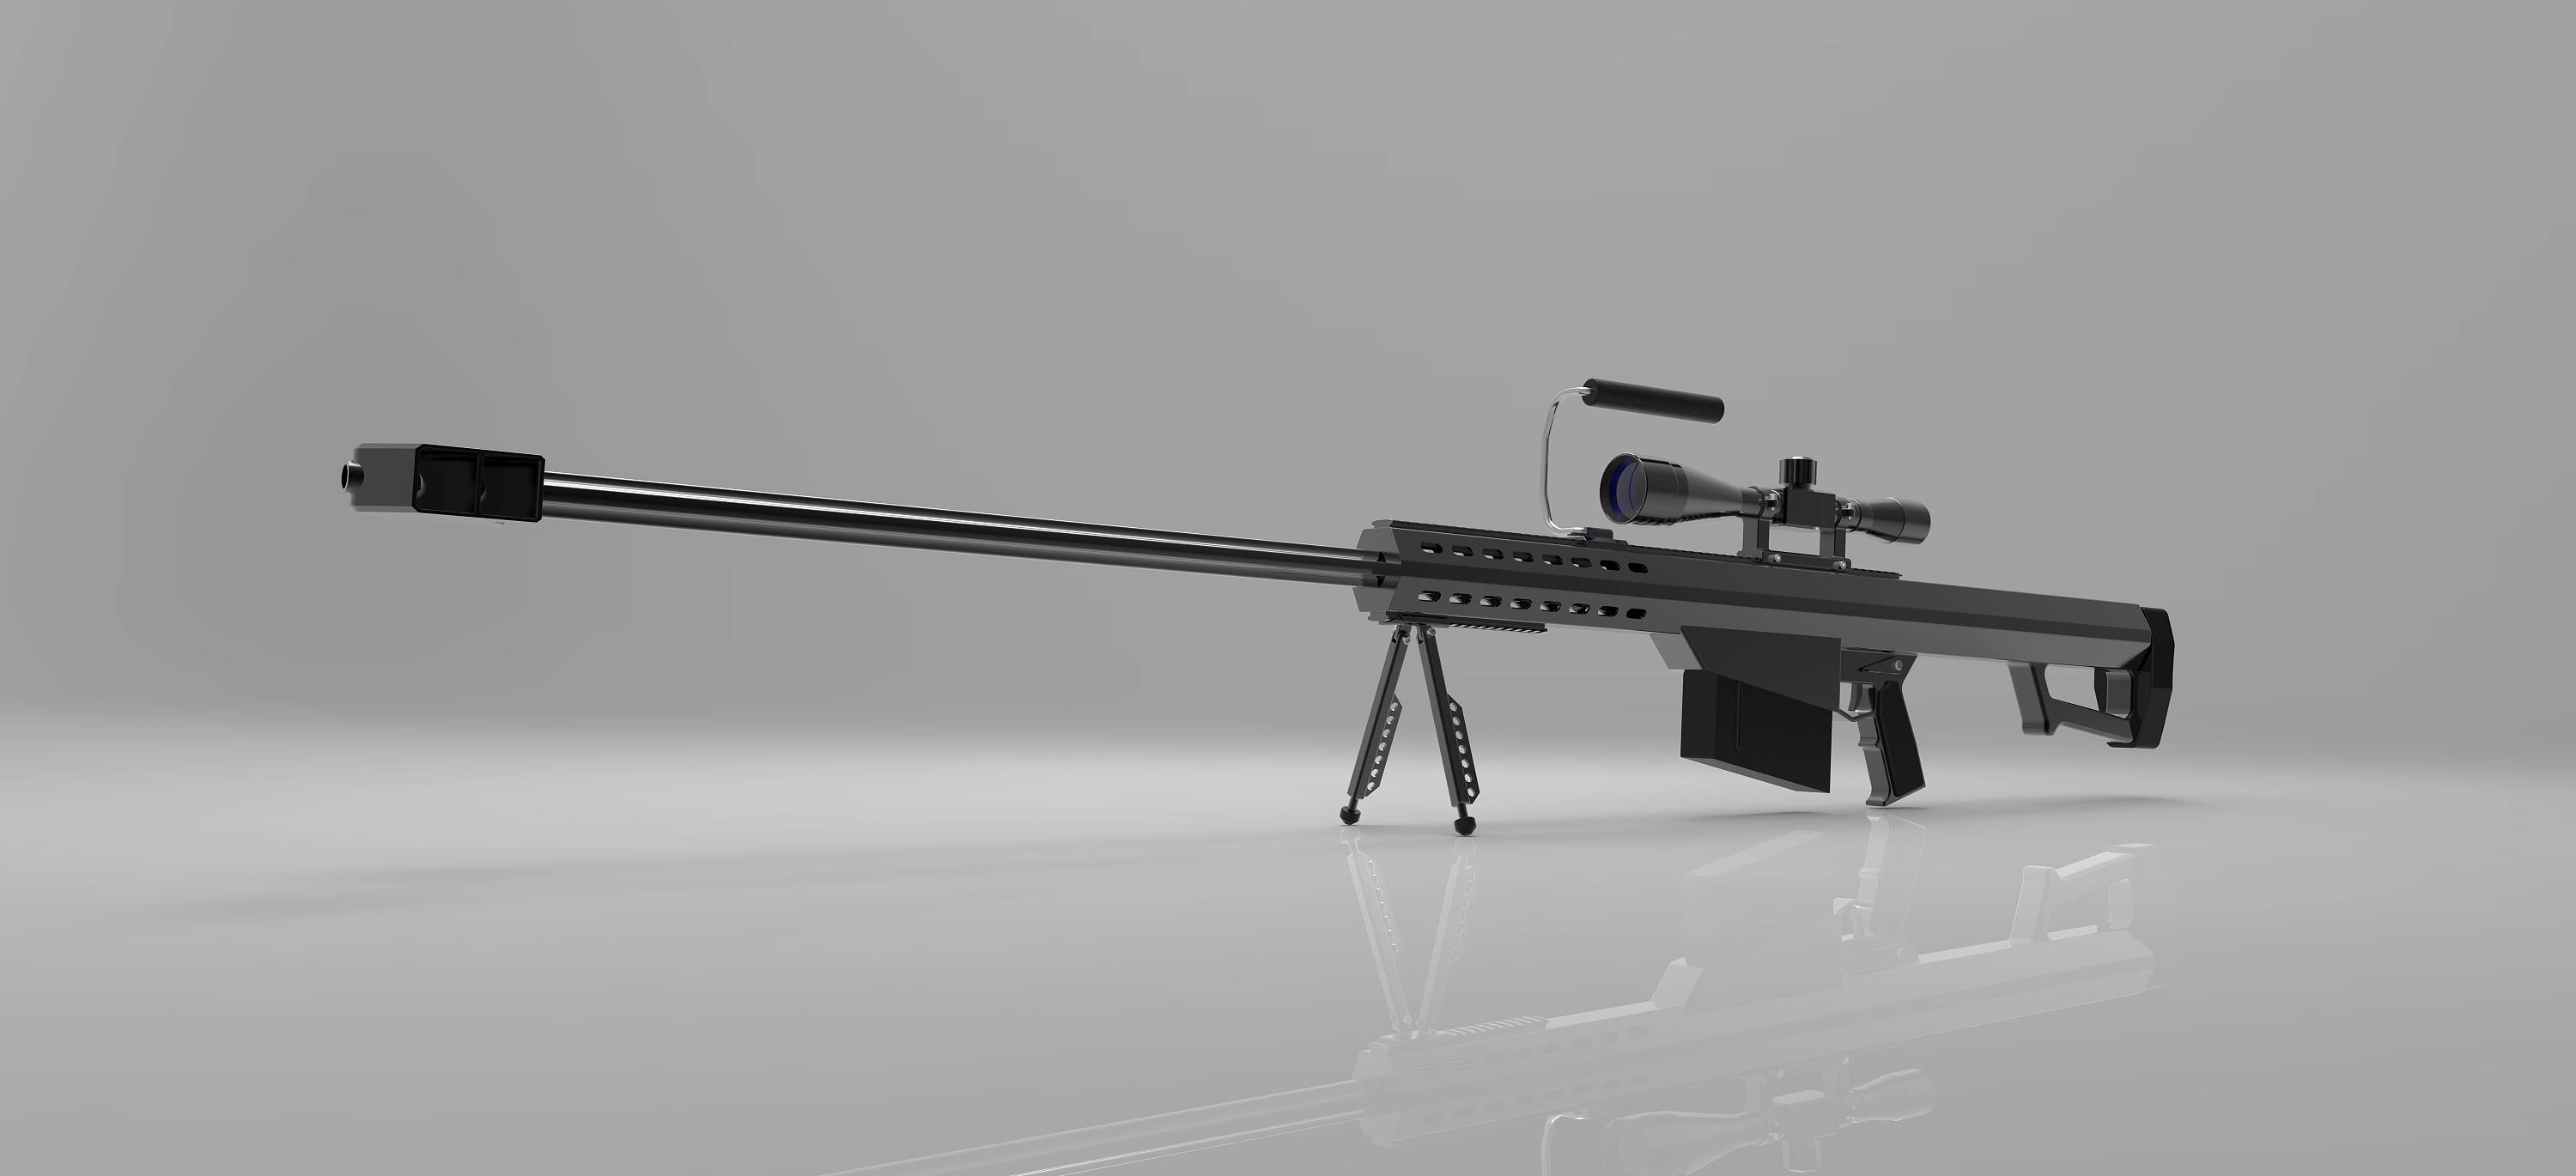 狙击步枪之王:巴雷特m82a1被世界多个国特种部队使用!